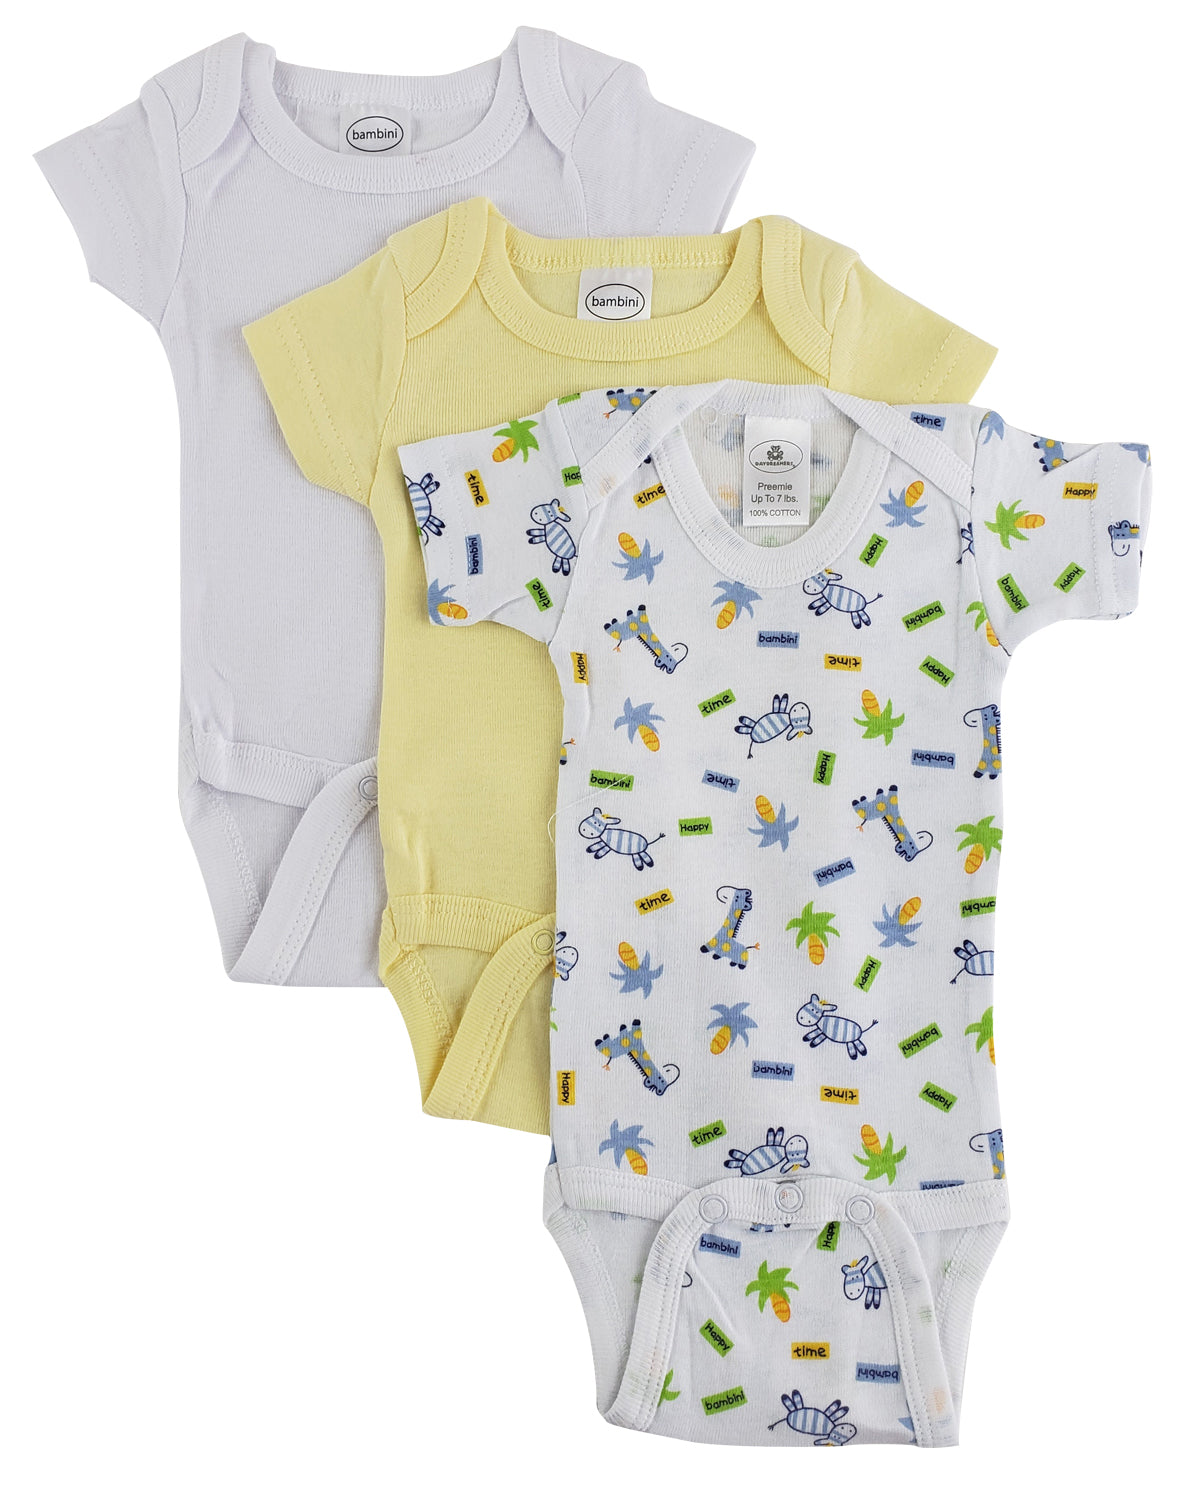 Preemie Boys Short Sleeve Printed Variety Pack 004PreemiePack